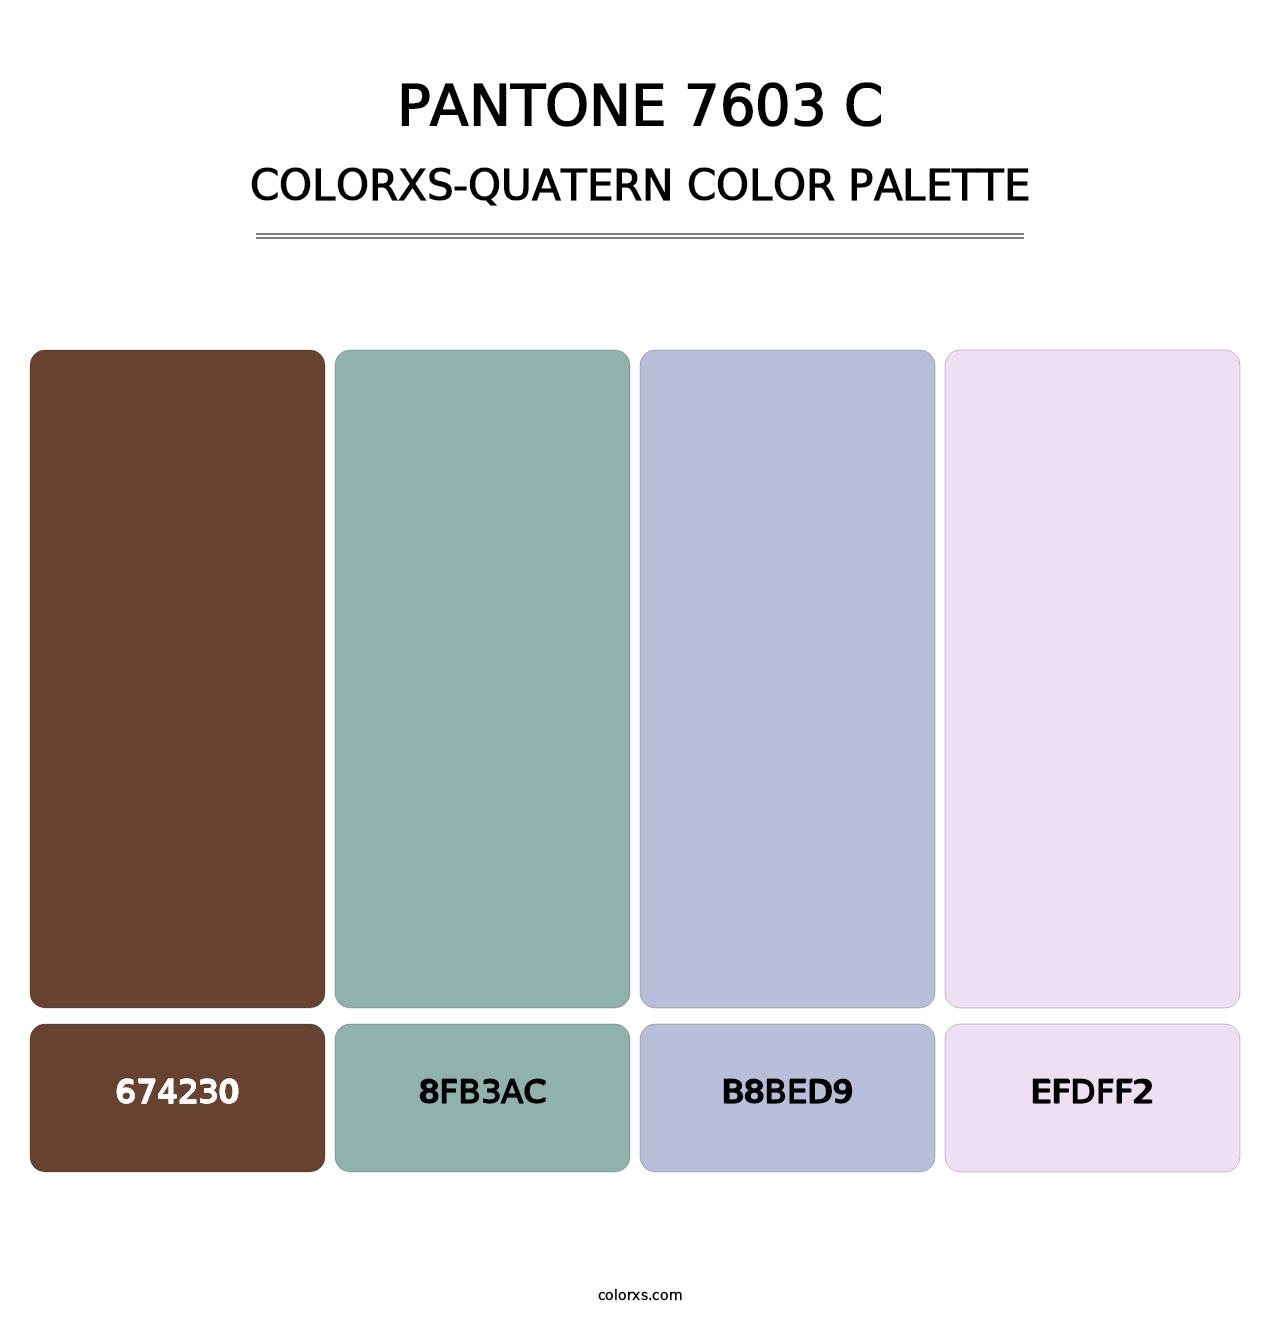 PANTONE 7603 C - Colorxs Quatern Palette